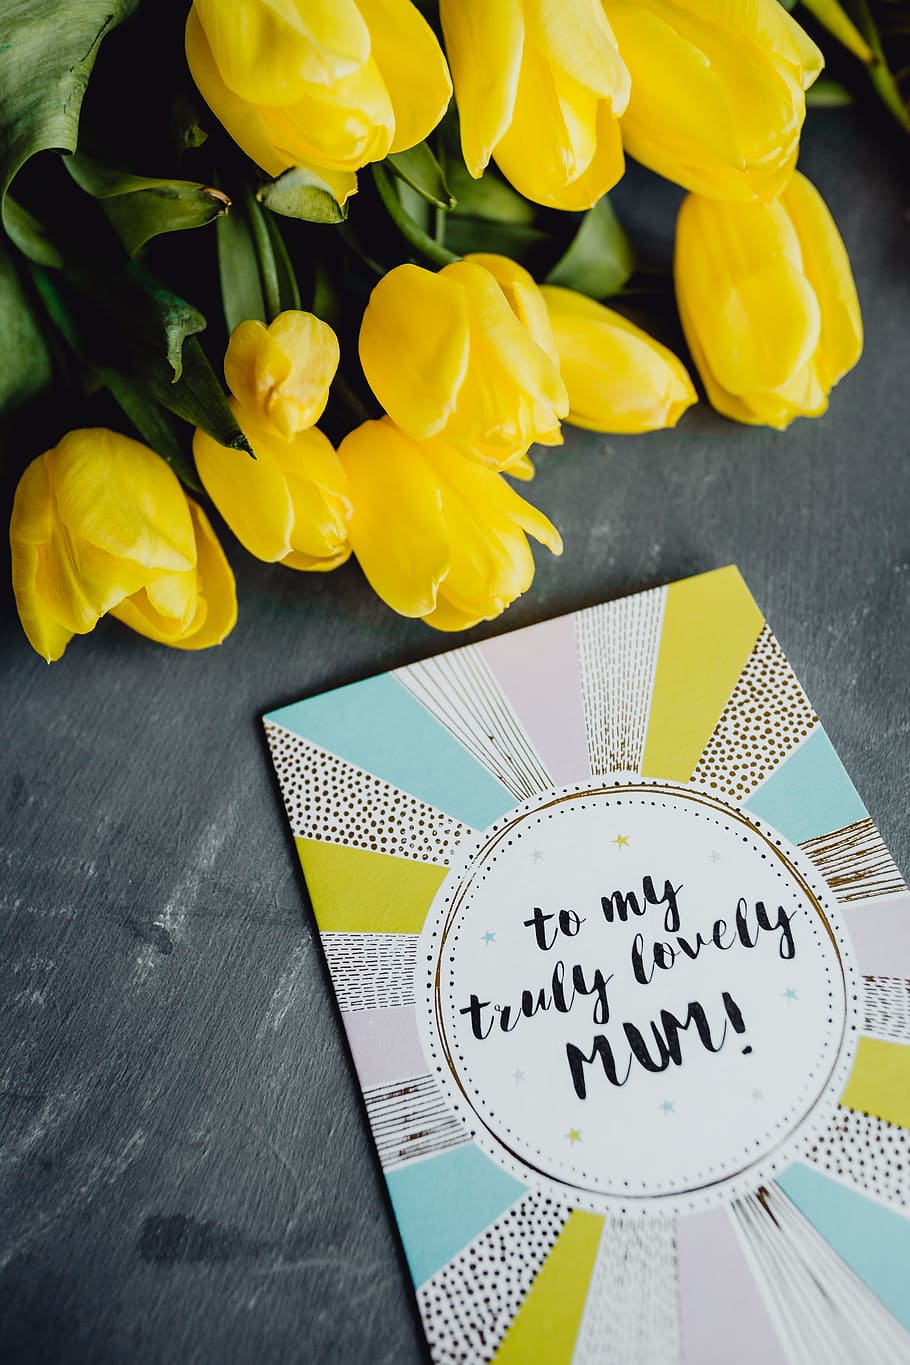 мамы, день матери, открытка, разноцветные, тюльпаны, цветы, любовь, поздравительная открытка, мама, спасибо